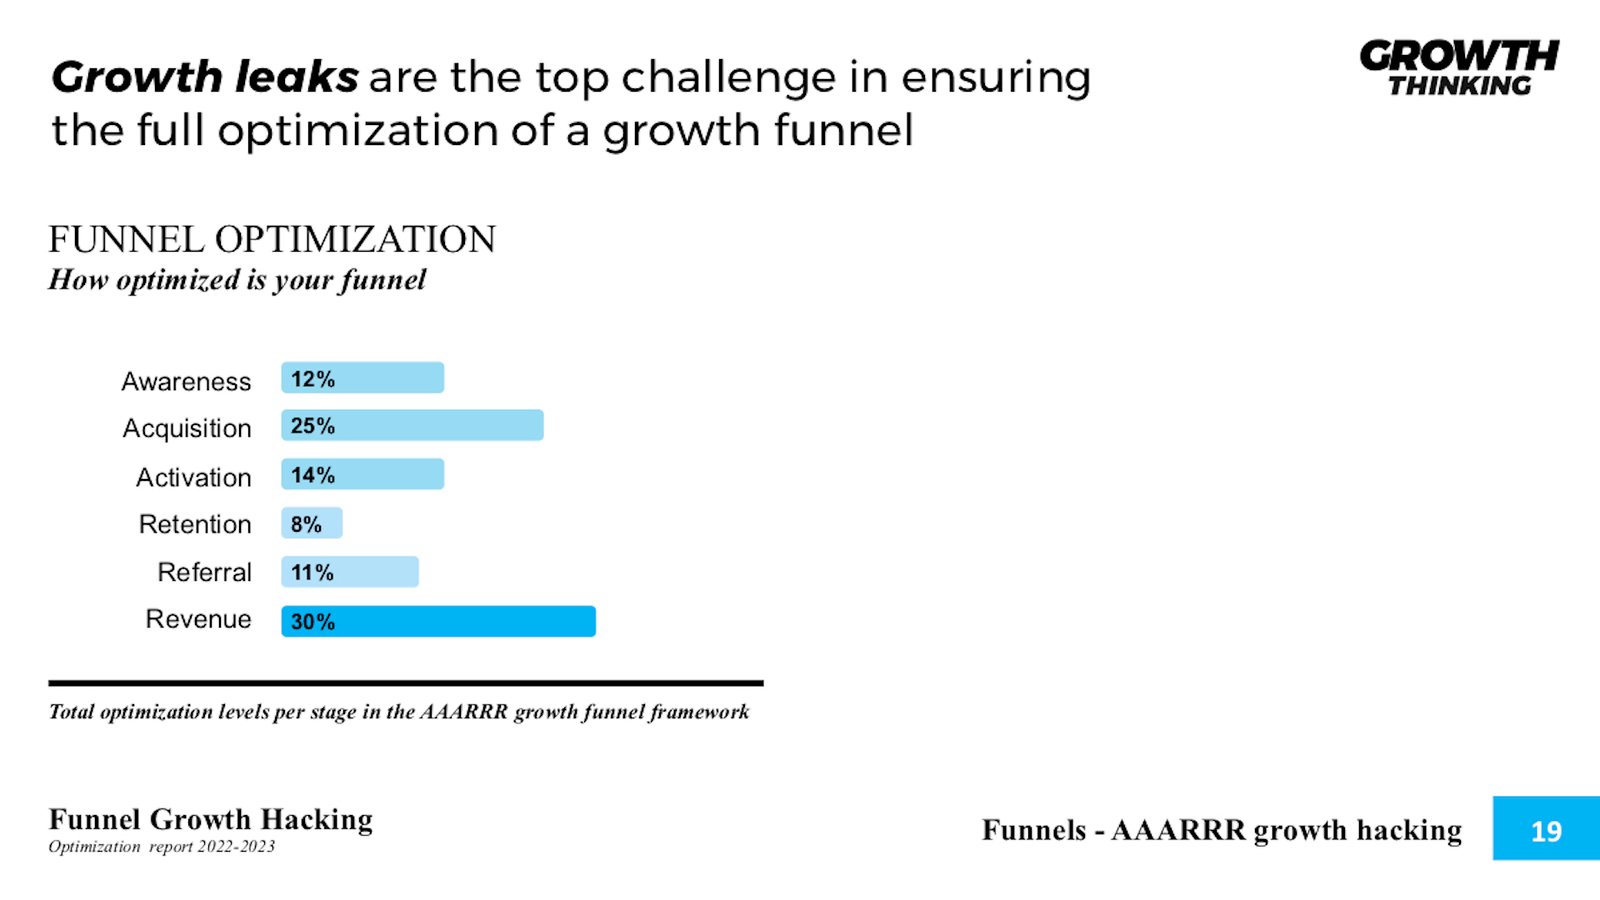 AAARRR pirate funnel - Growth Funnel